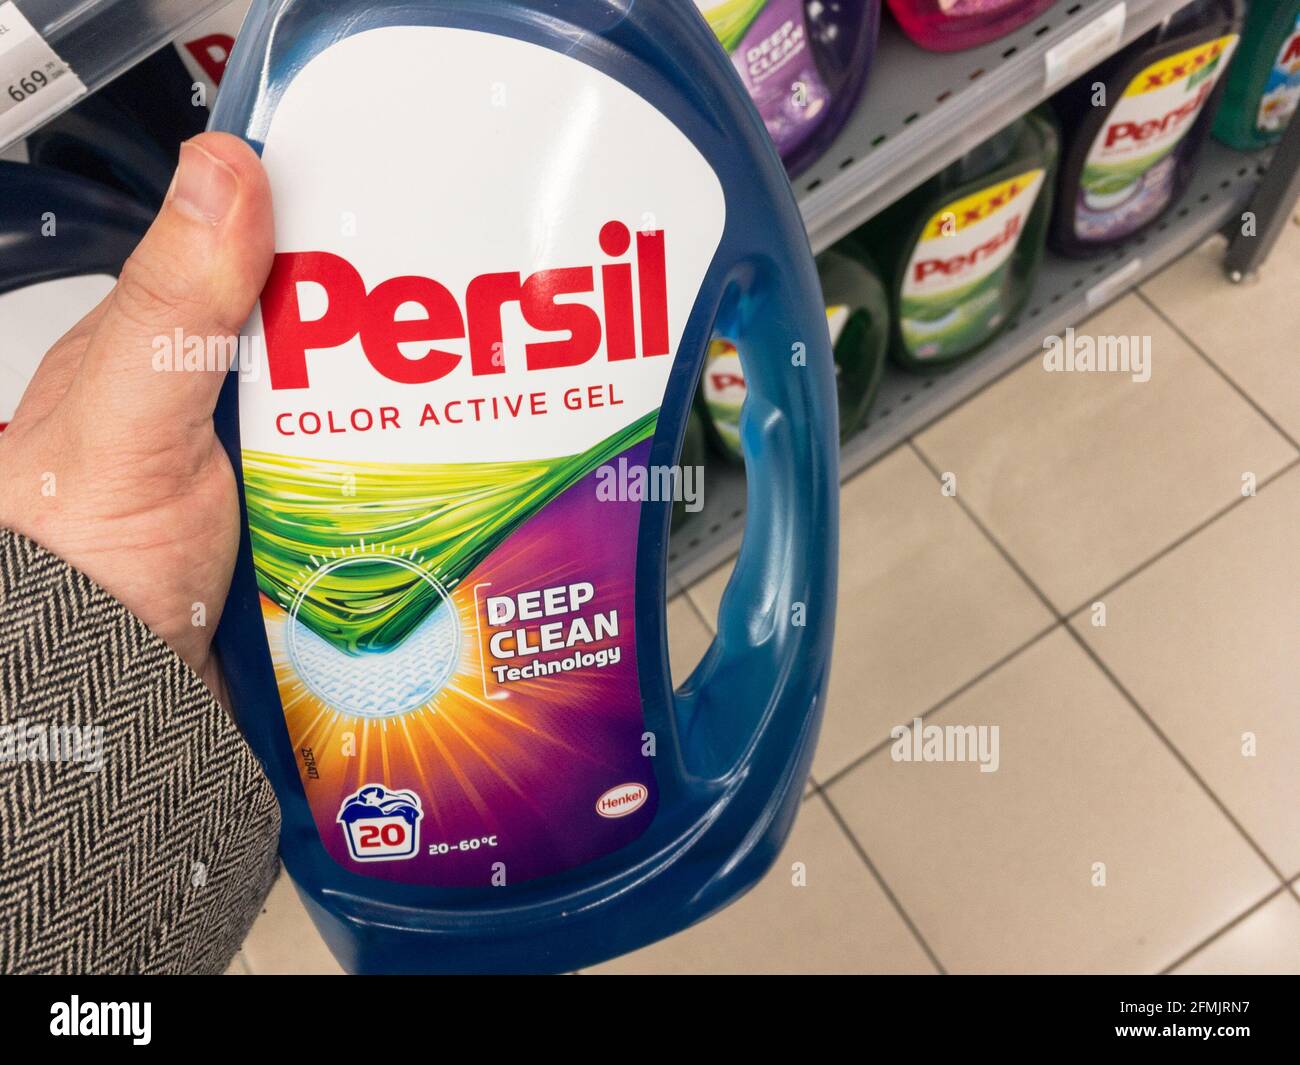 Immagine di una bottiglia con il logo del detersivo per bucato Persil.  Persil è un marchio tedesco di detersivo per bucato prodotto e  commercializzato da Henkel aroun Foto stock - Alamy